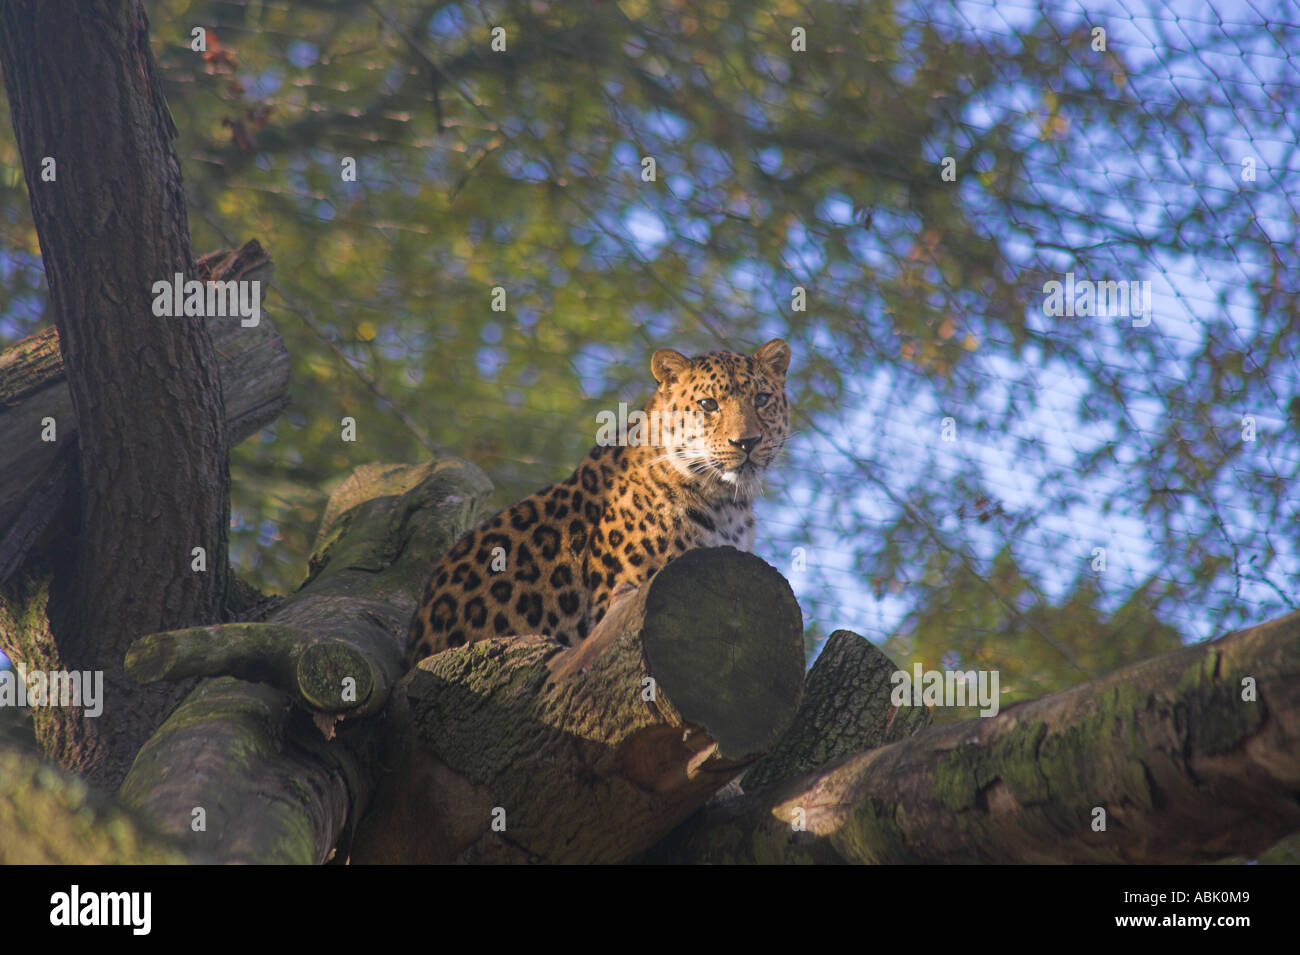 Amur el leopardo (Panthera pardus orientalis ) observando desde la percha de madera Foto de stock